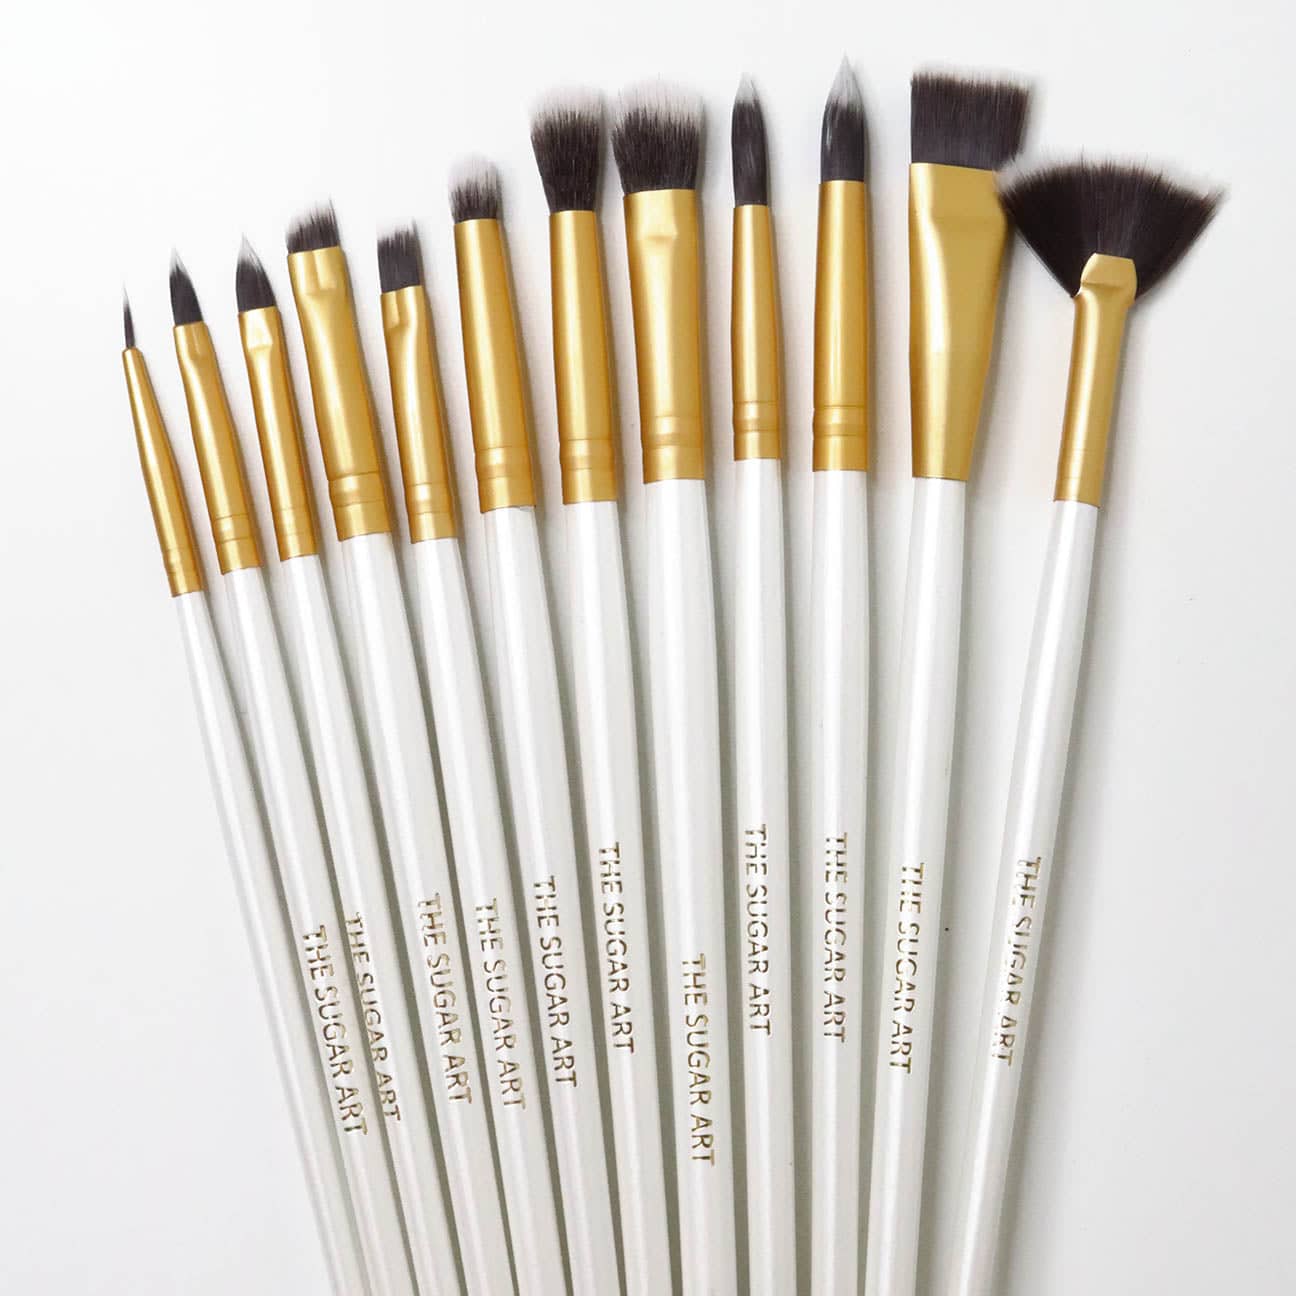 Paint Brush Set - The Sugar Art, Inc.